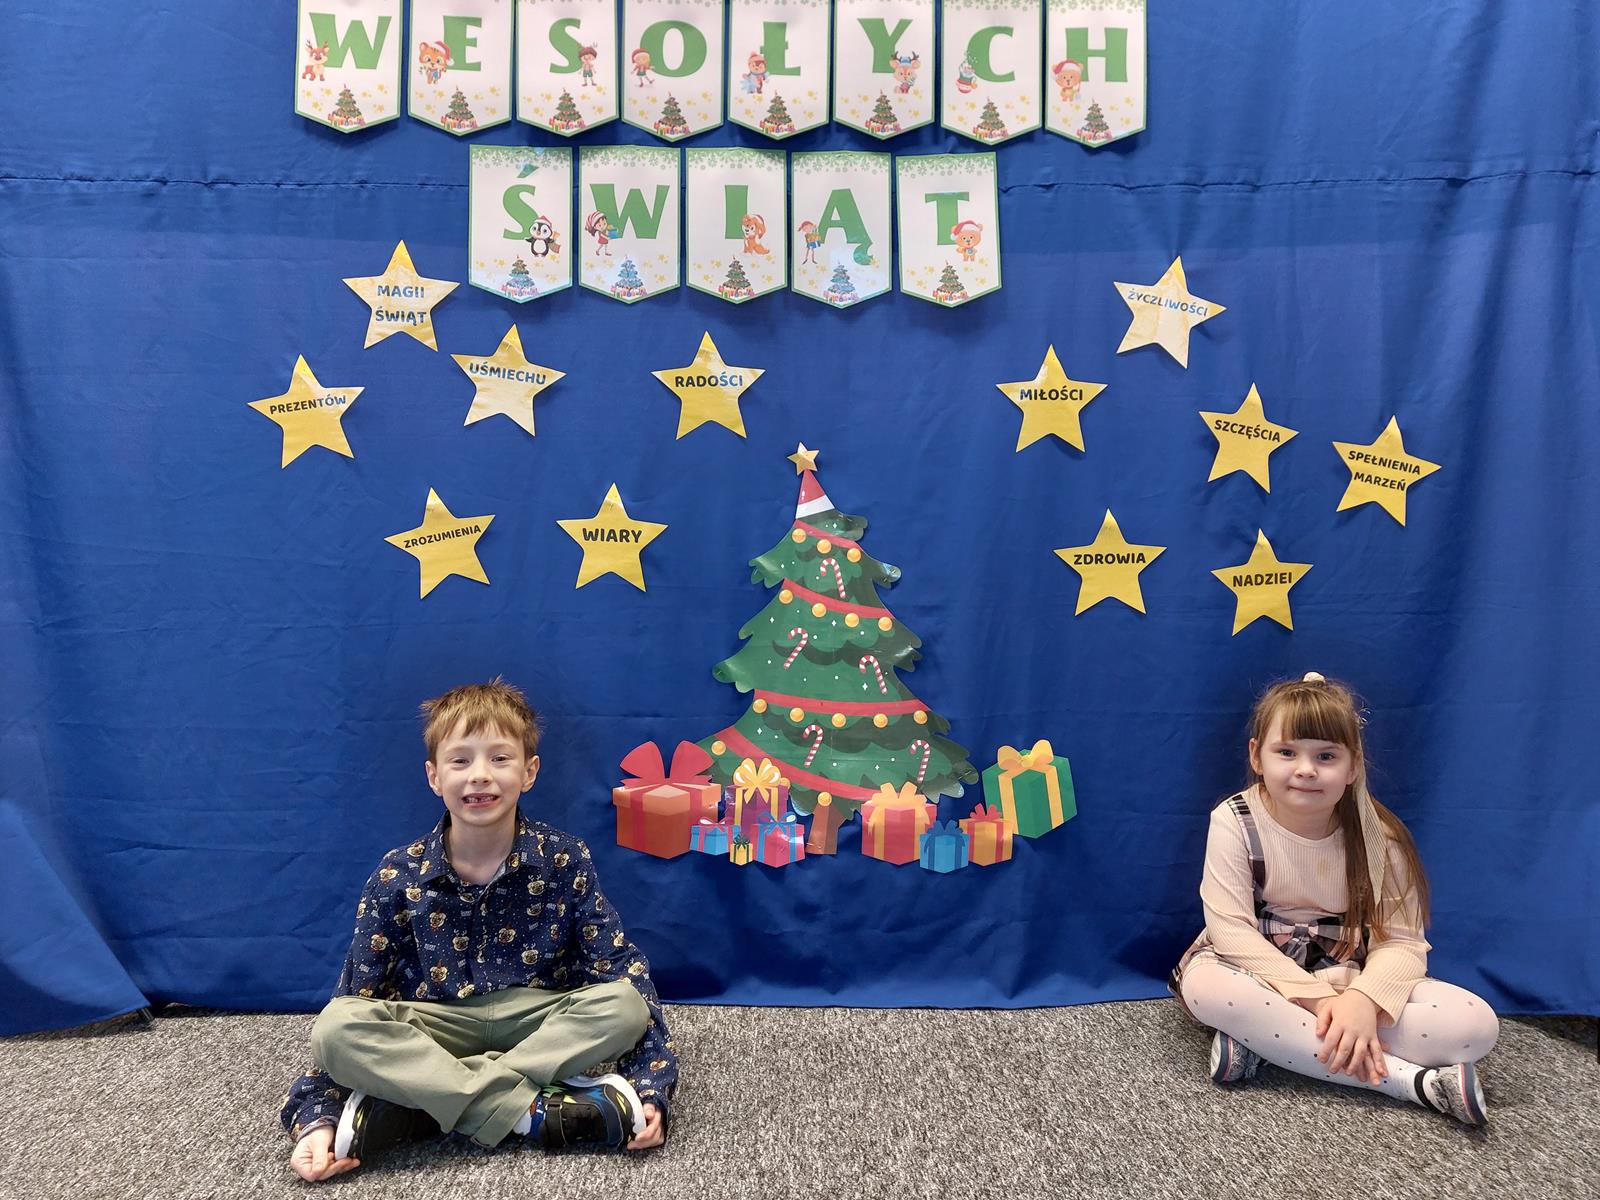 Chłopiec i dziewczynka pozują do zdjęcia, siedzą na dywanie. Za nimi znajduje się materiał, na którym wisi dekoracja i napis Wesołych Świąt.